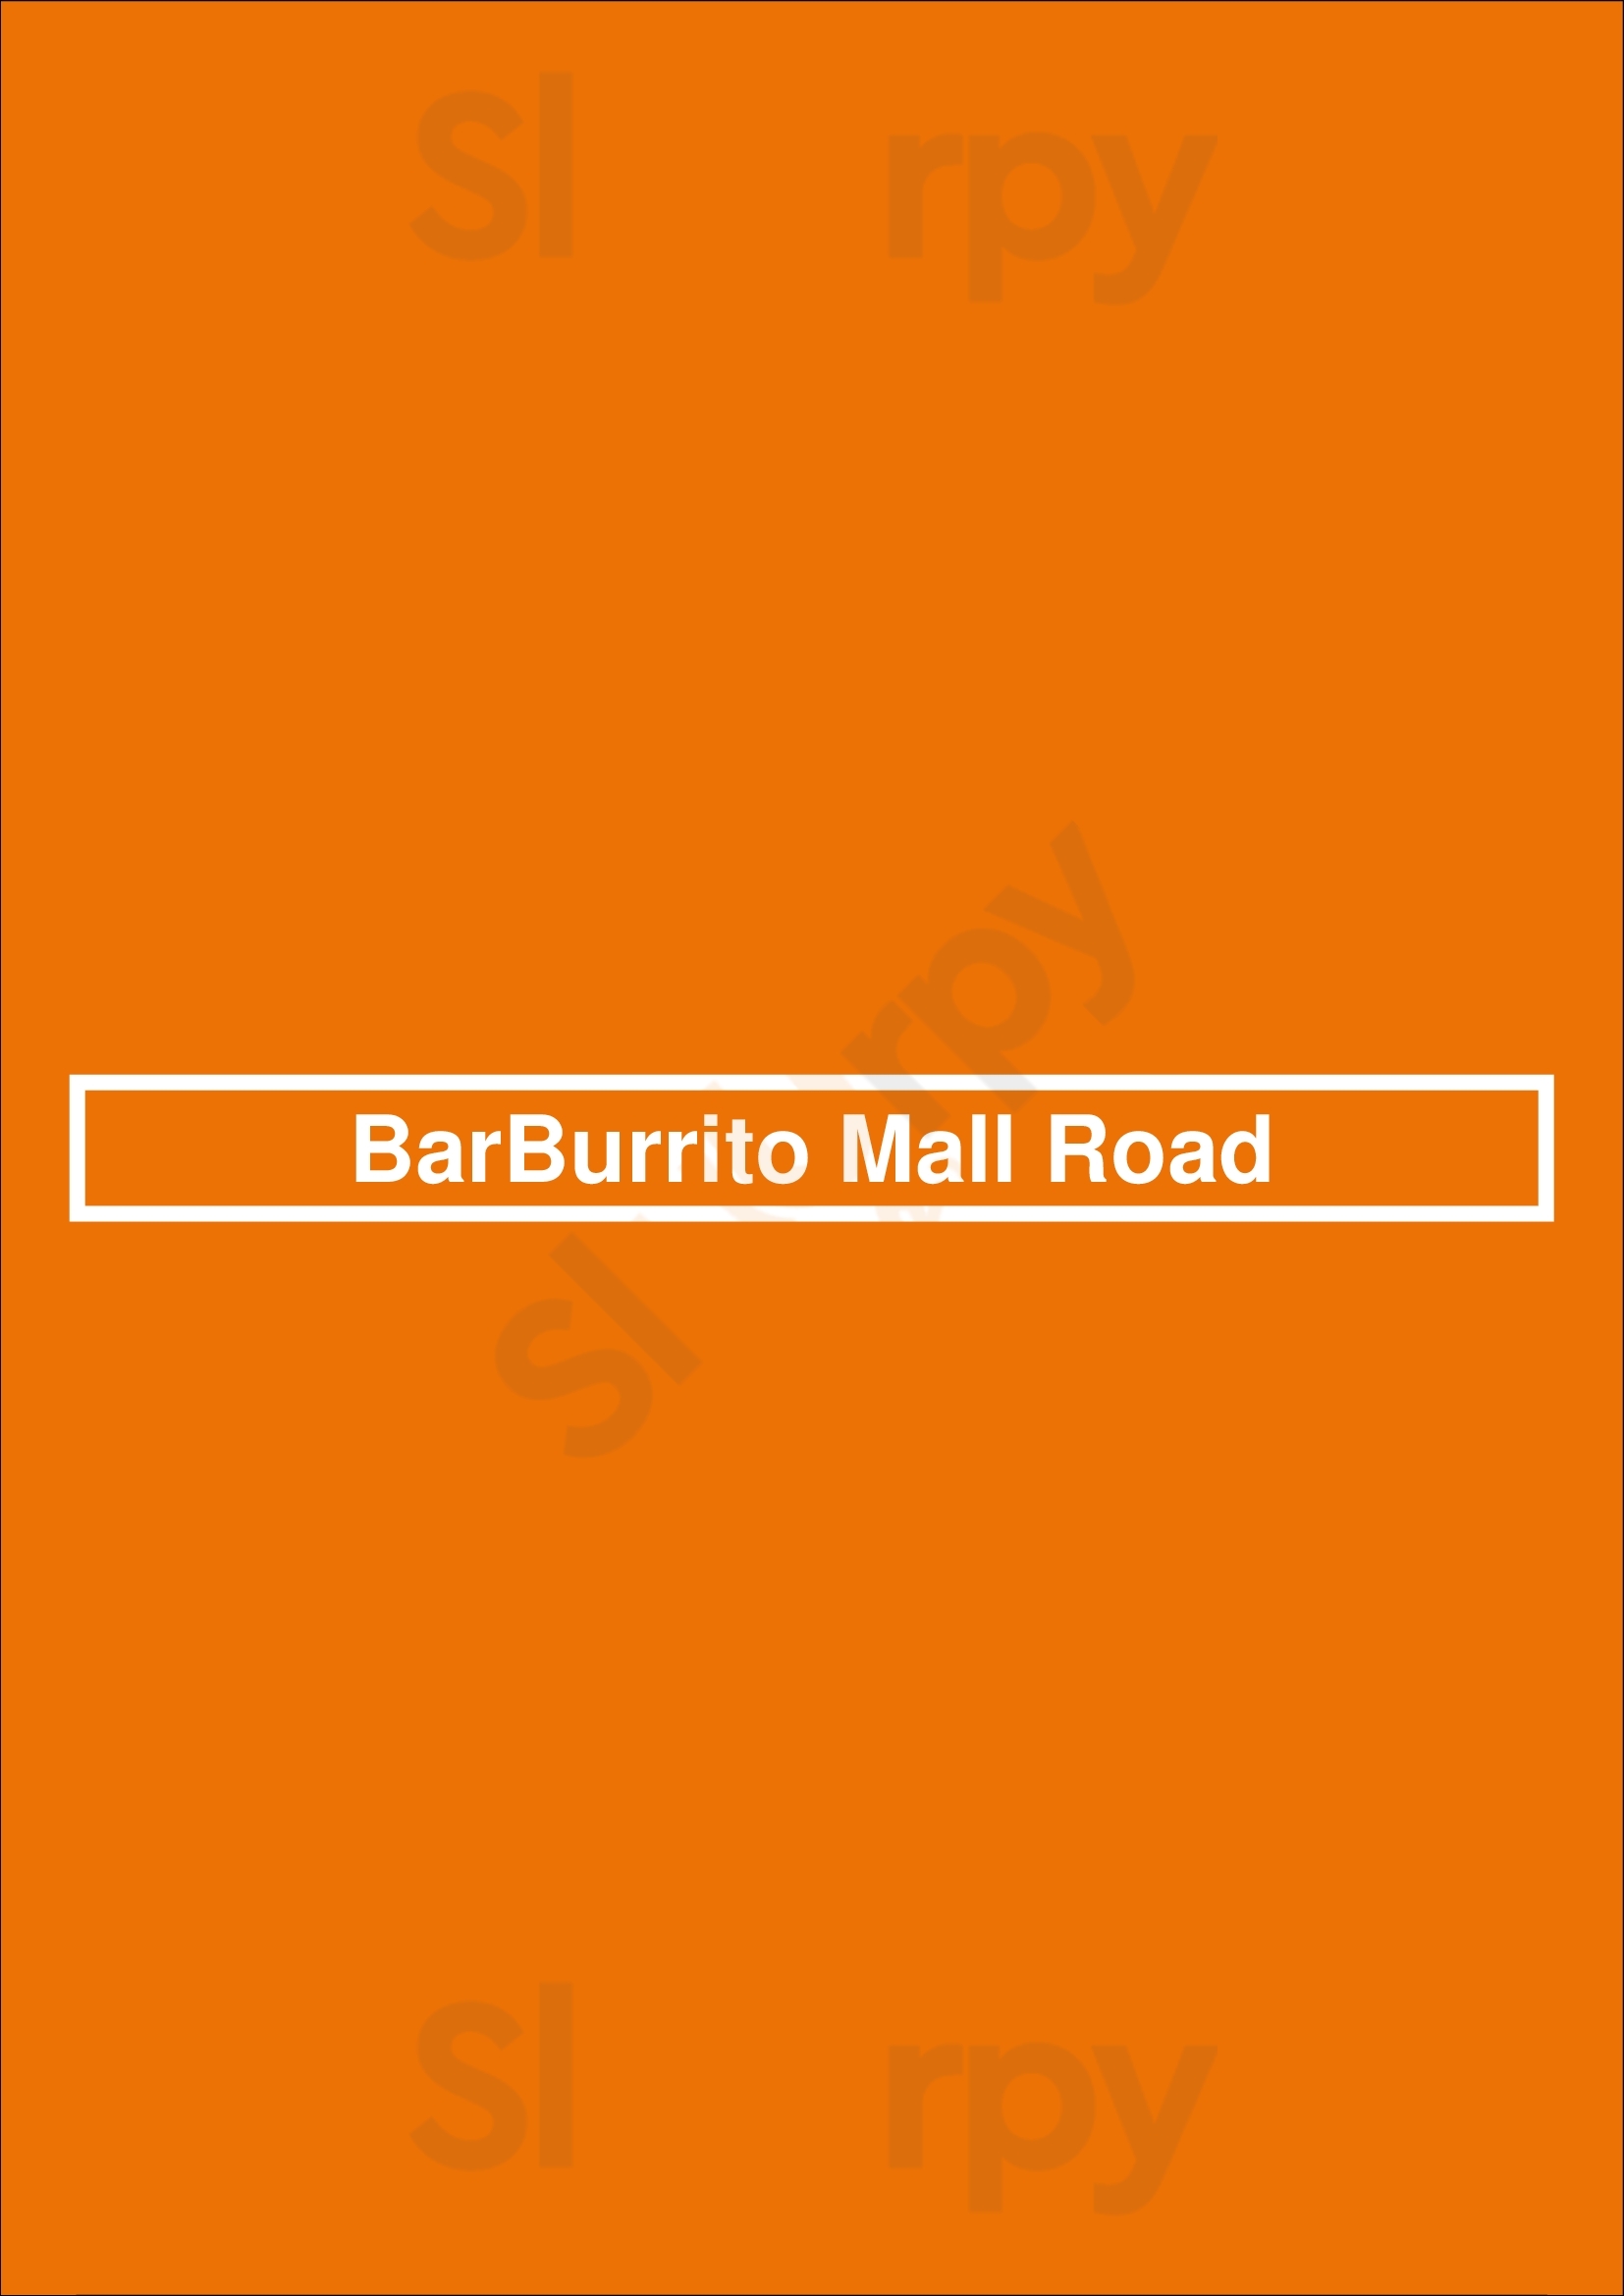 Barburrito Mall Road Hamilton Menu - 1